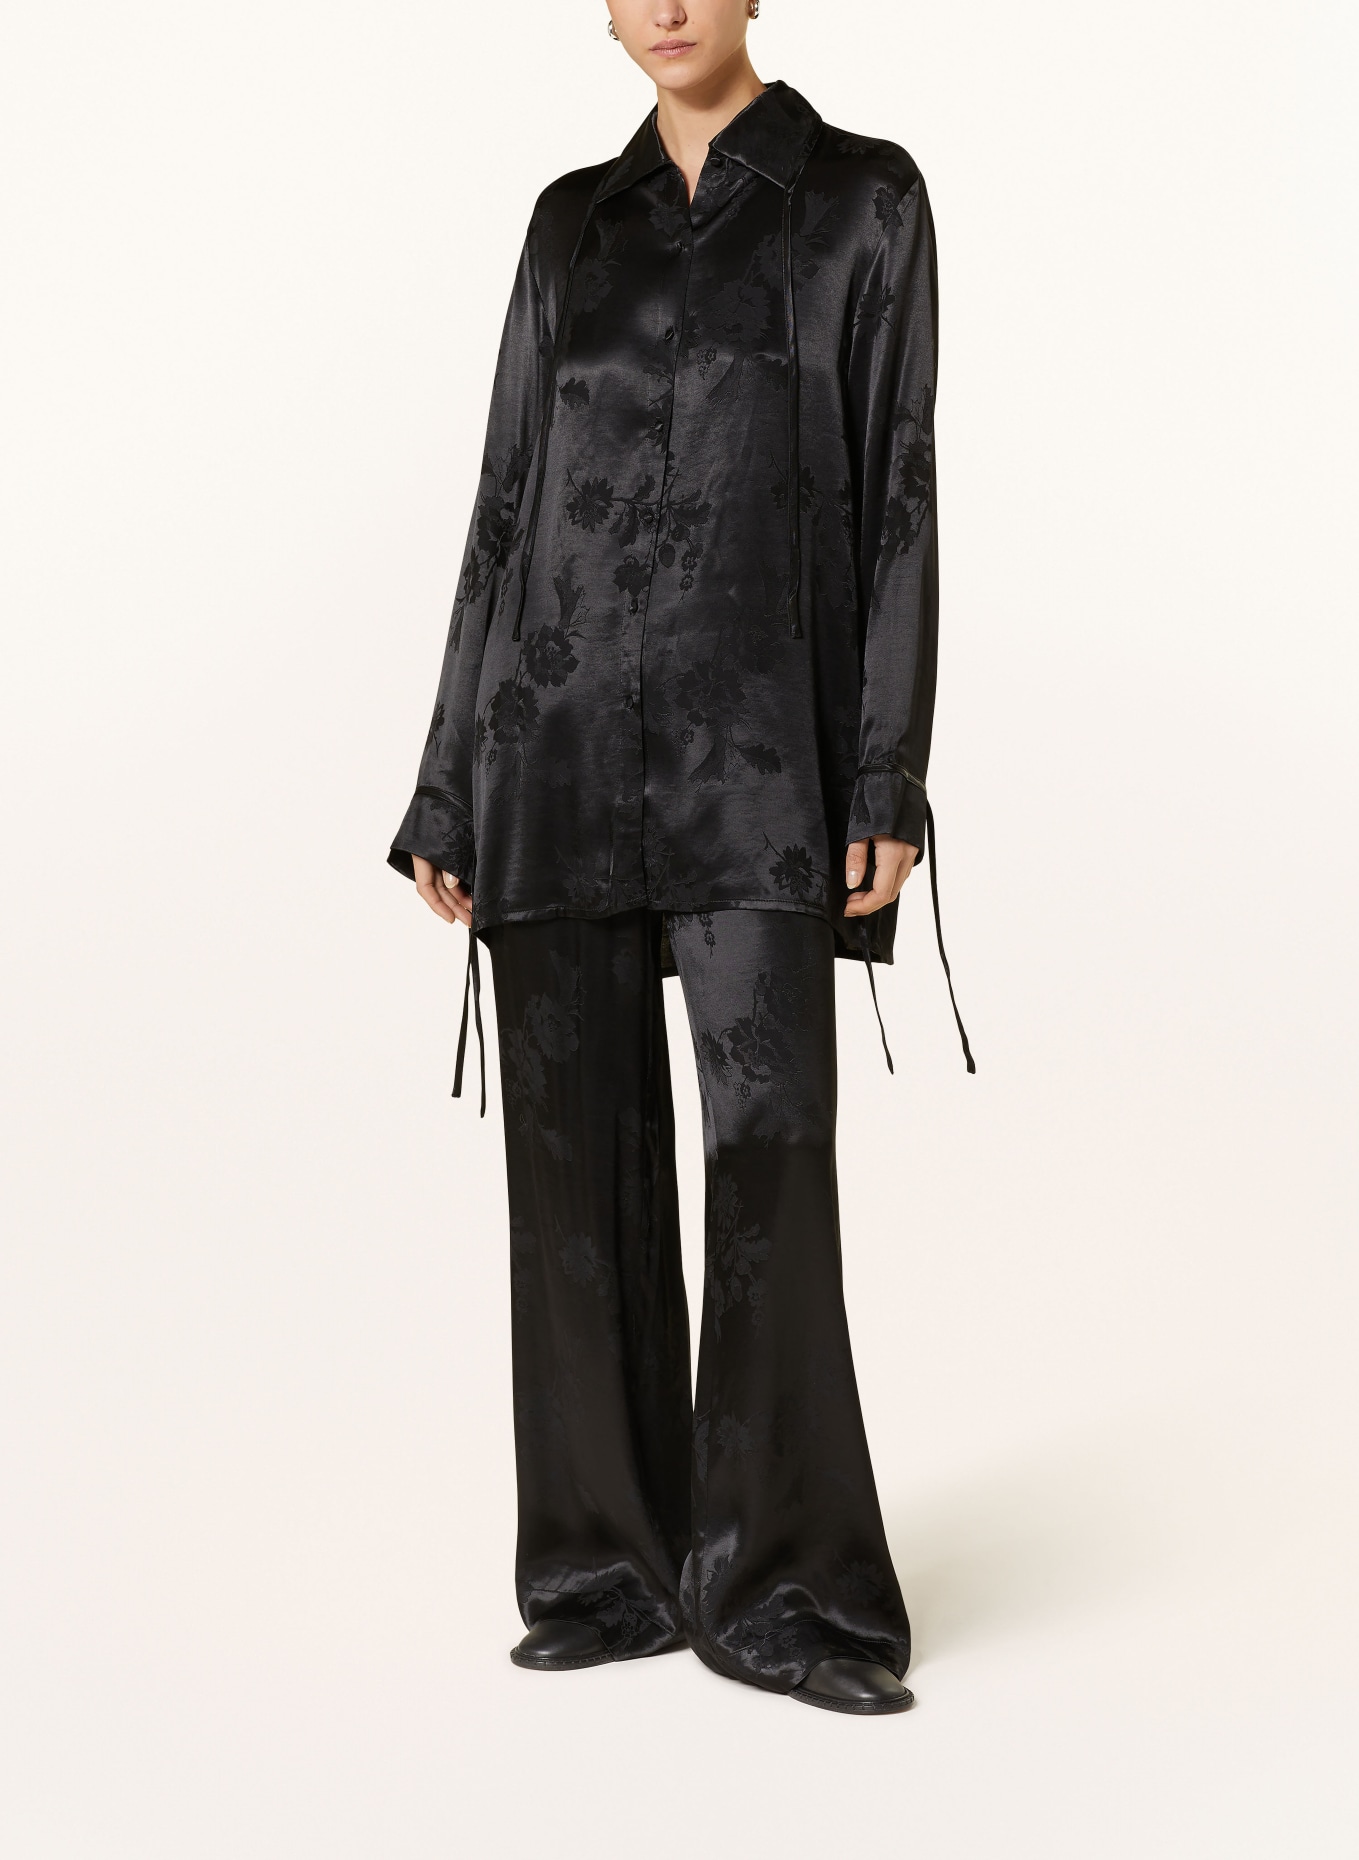 HOLZWEILER Shirt blouse POM made of satin, Color: BLACK (Image 2)